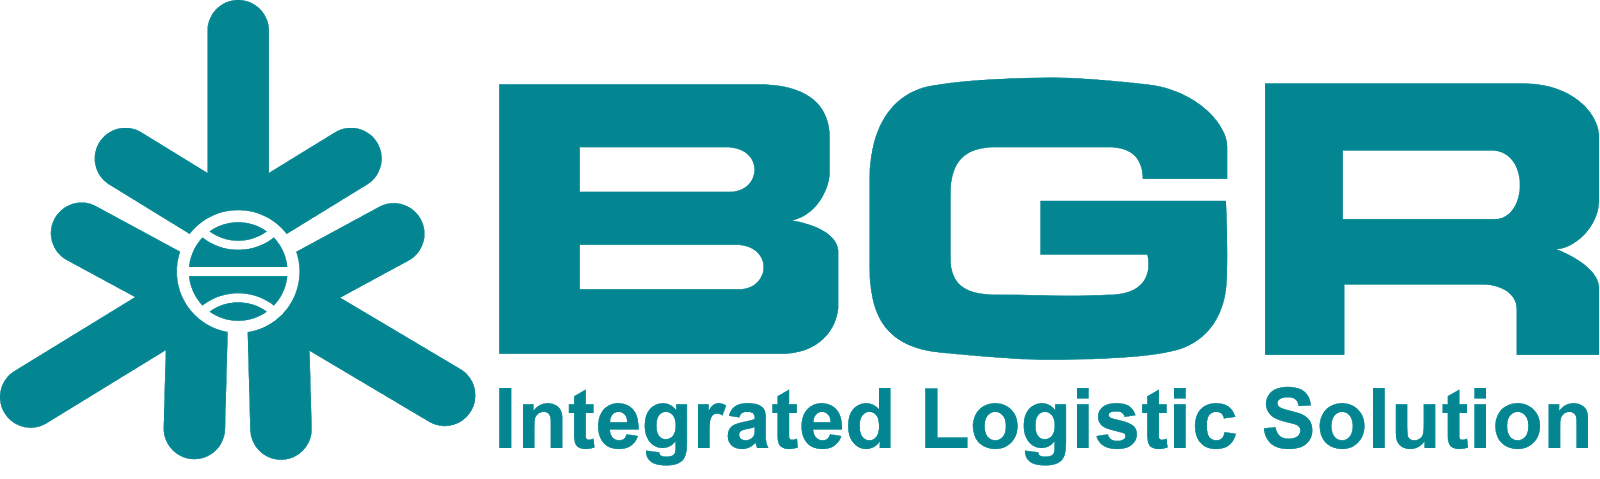 BGR Logo - Logo Bhanda Ghara Reksa (BGR) - 237 Design